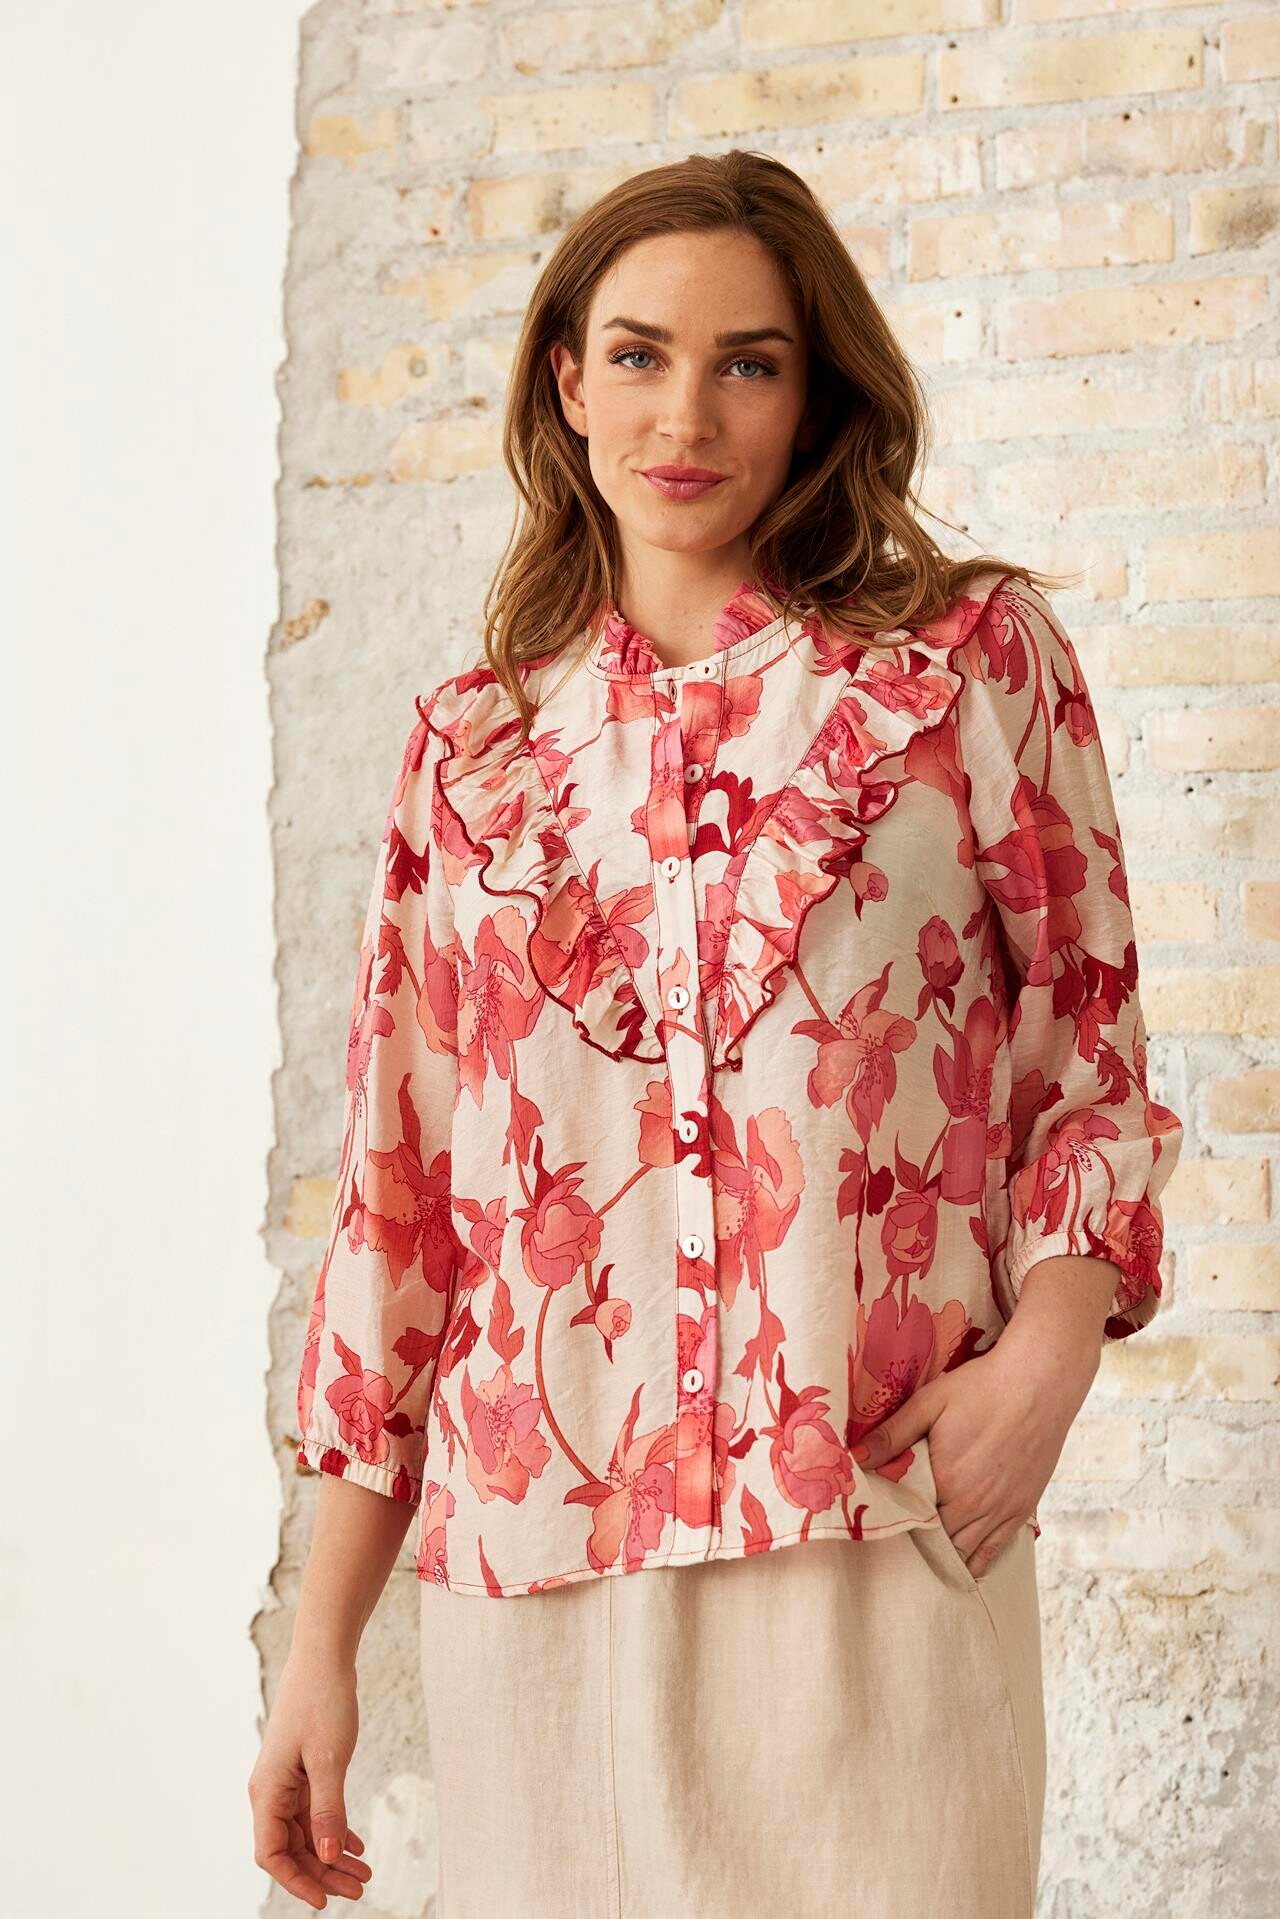 Se IN FRONT Summer Skjorte, Farve: Coral Rose, Størrelse: XL, Dame hos Infront Women